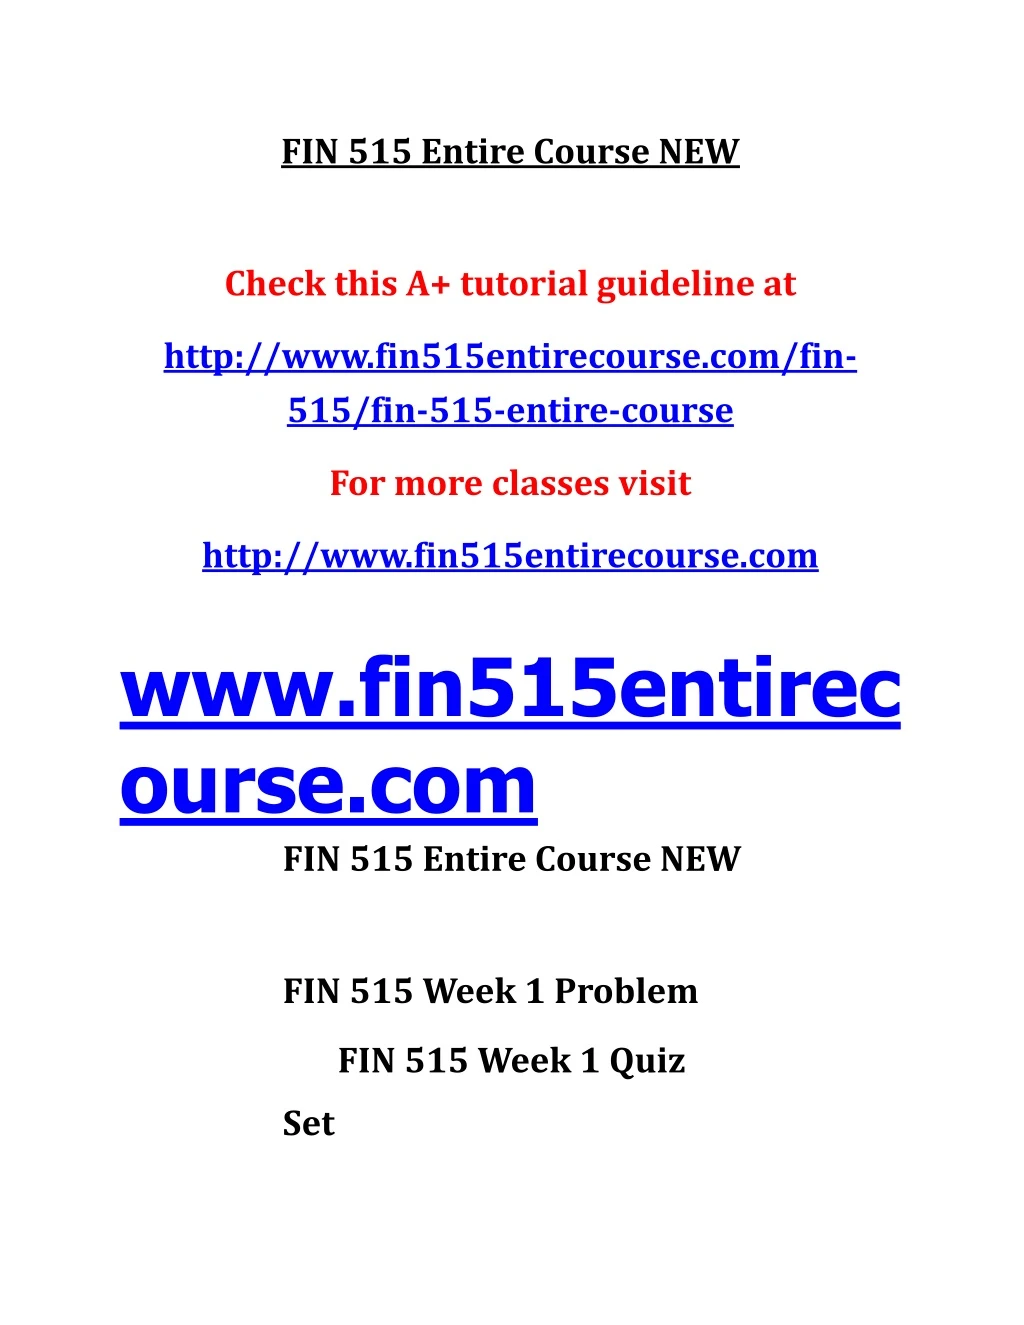 fin 515 entire course new